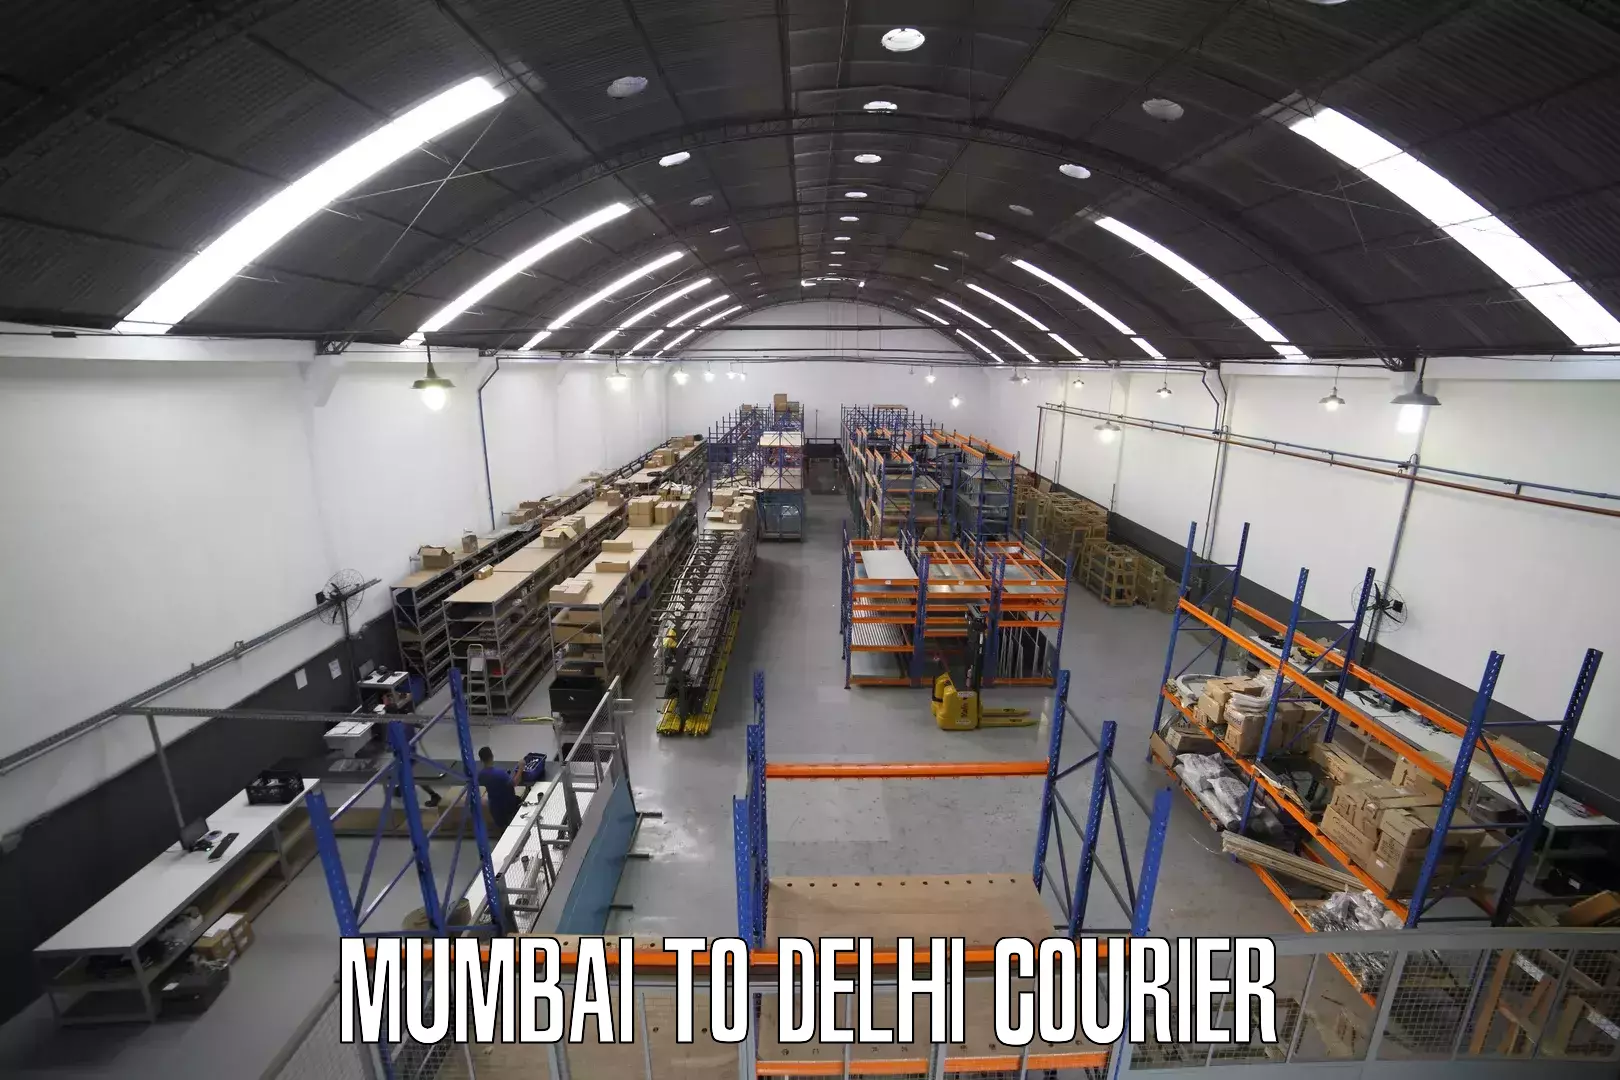 Digital courier platforms Mumbai to NCR